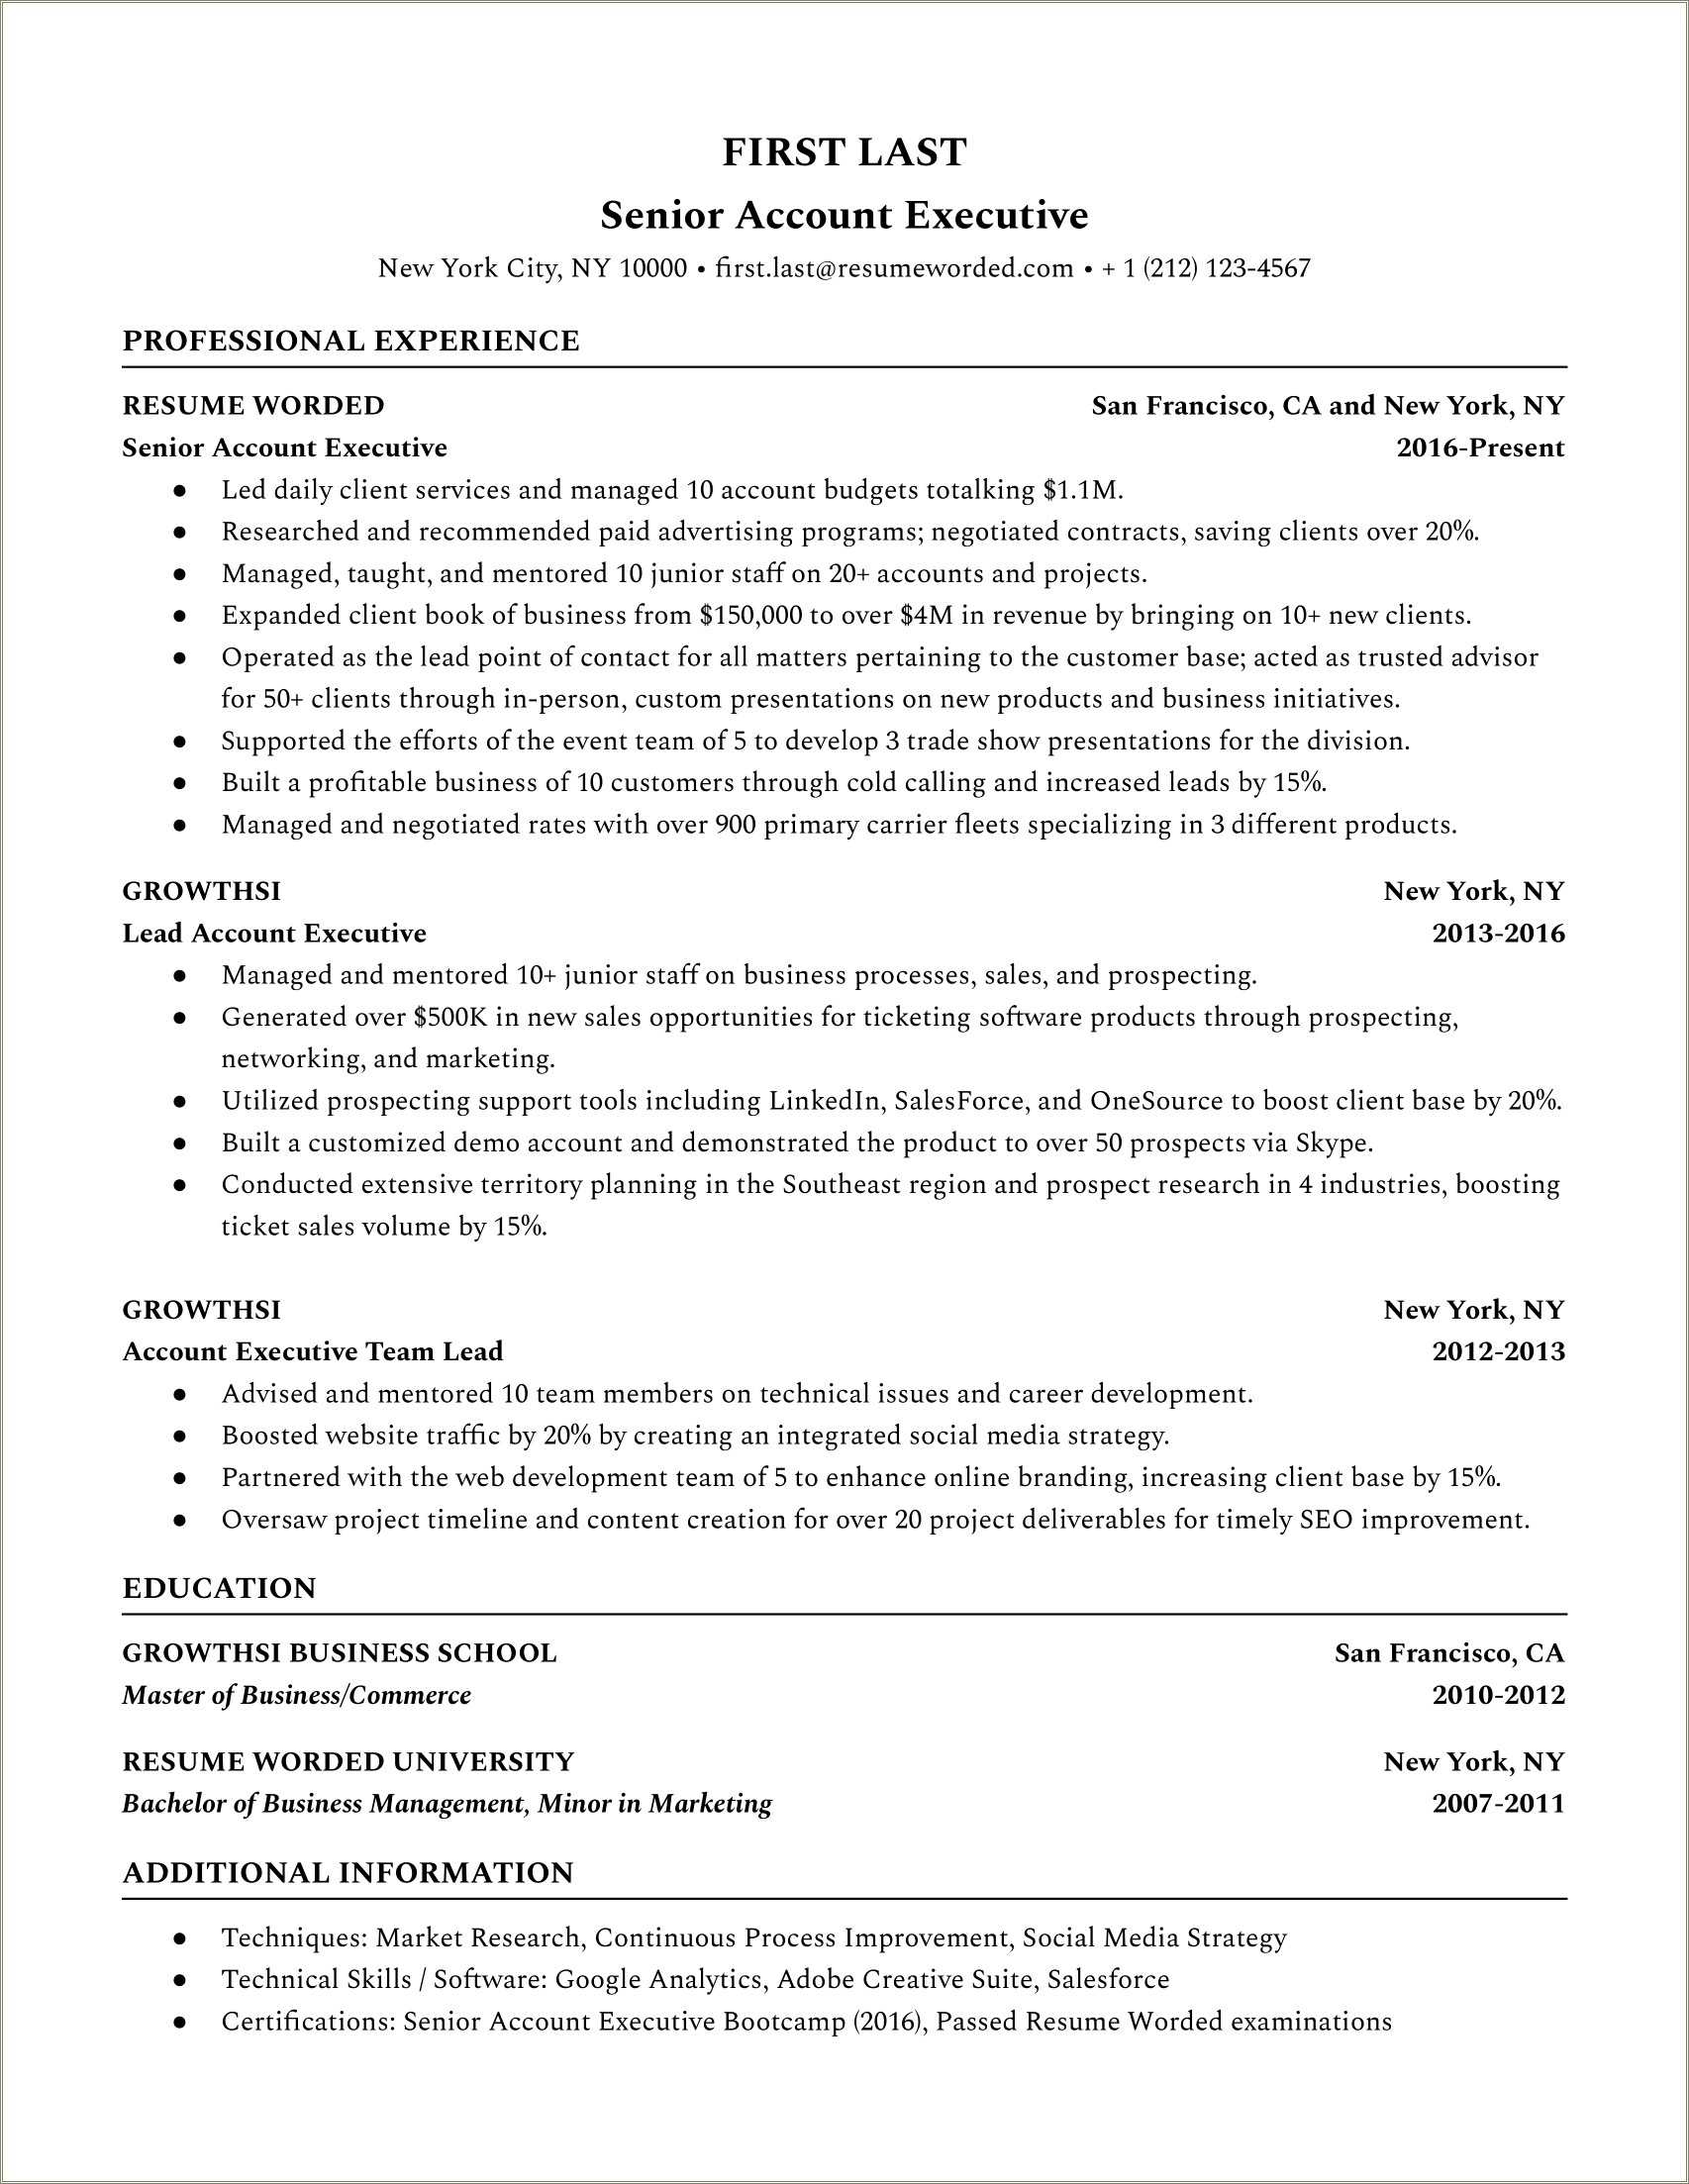 Advertising Account Executive Job Description For Resume